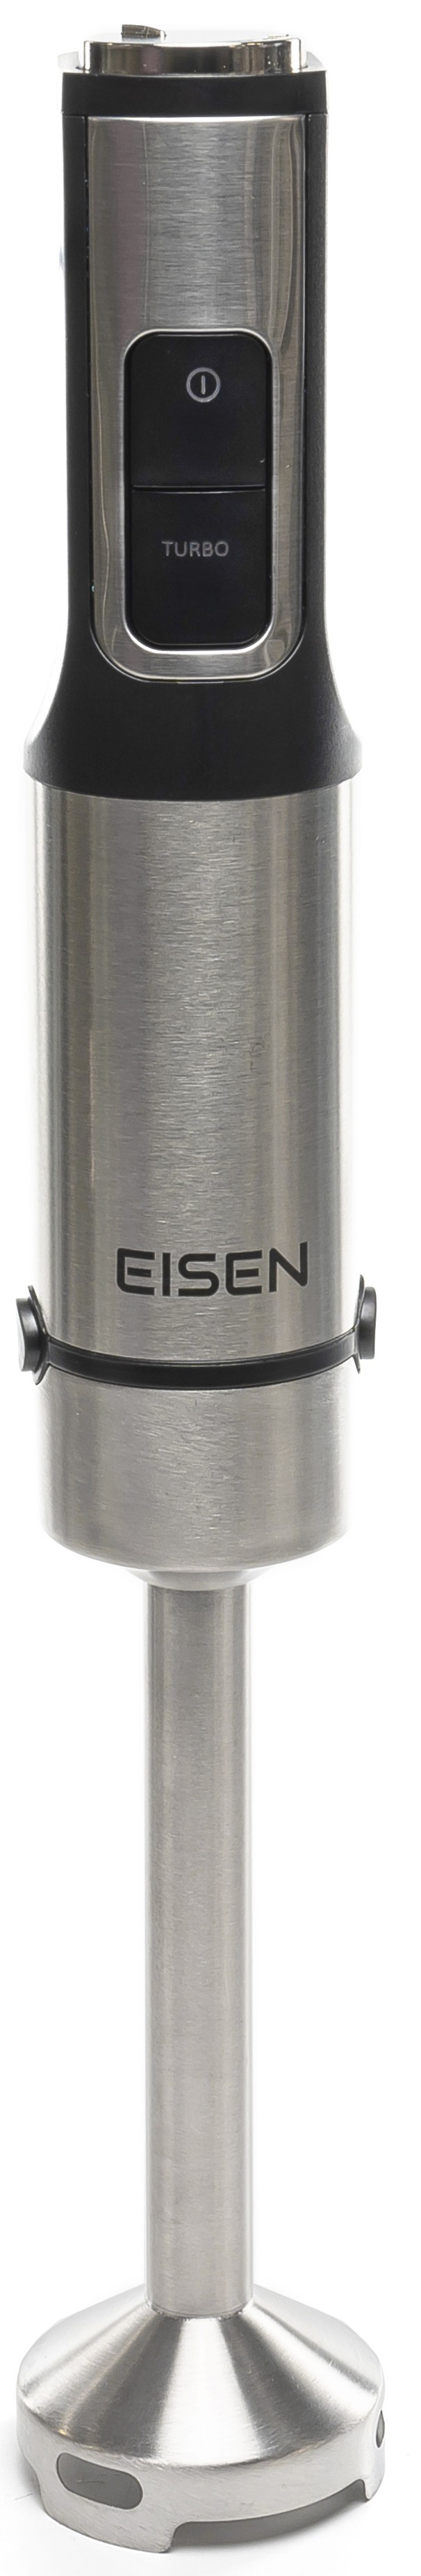 Eisen EBS-1500 в магазине в Киеве - фото 10